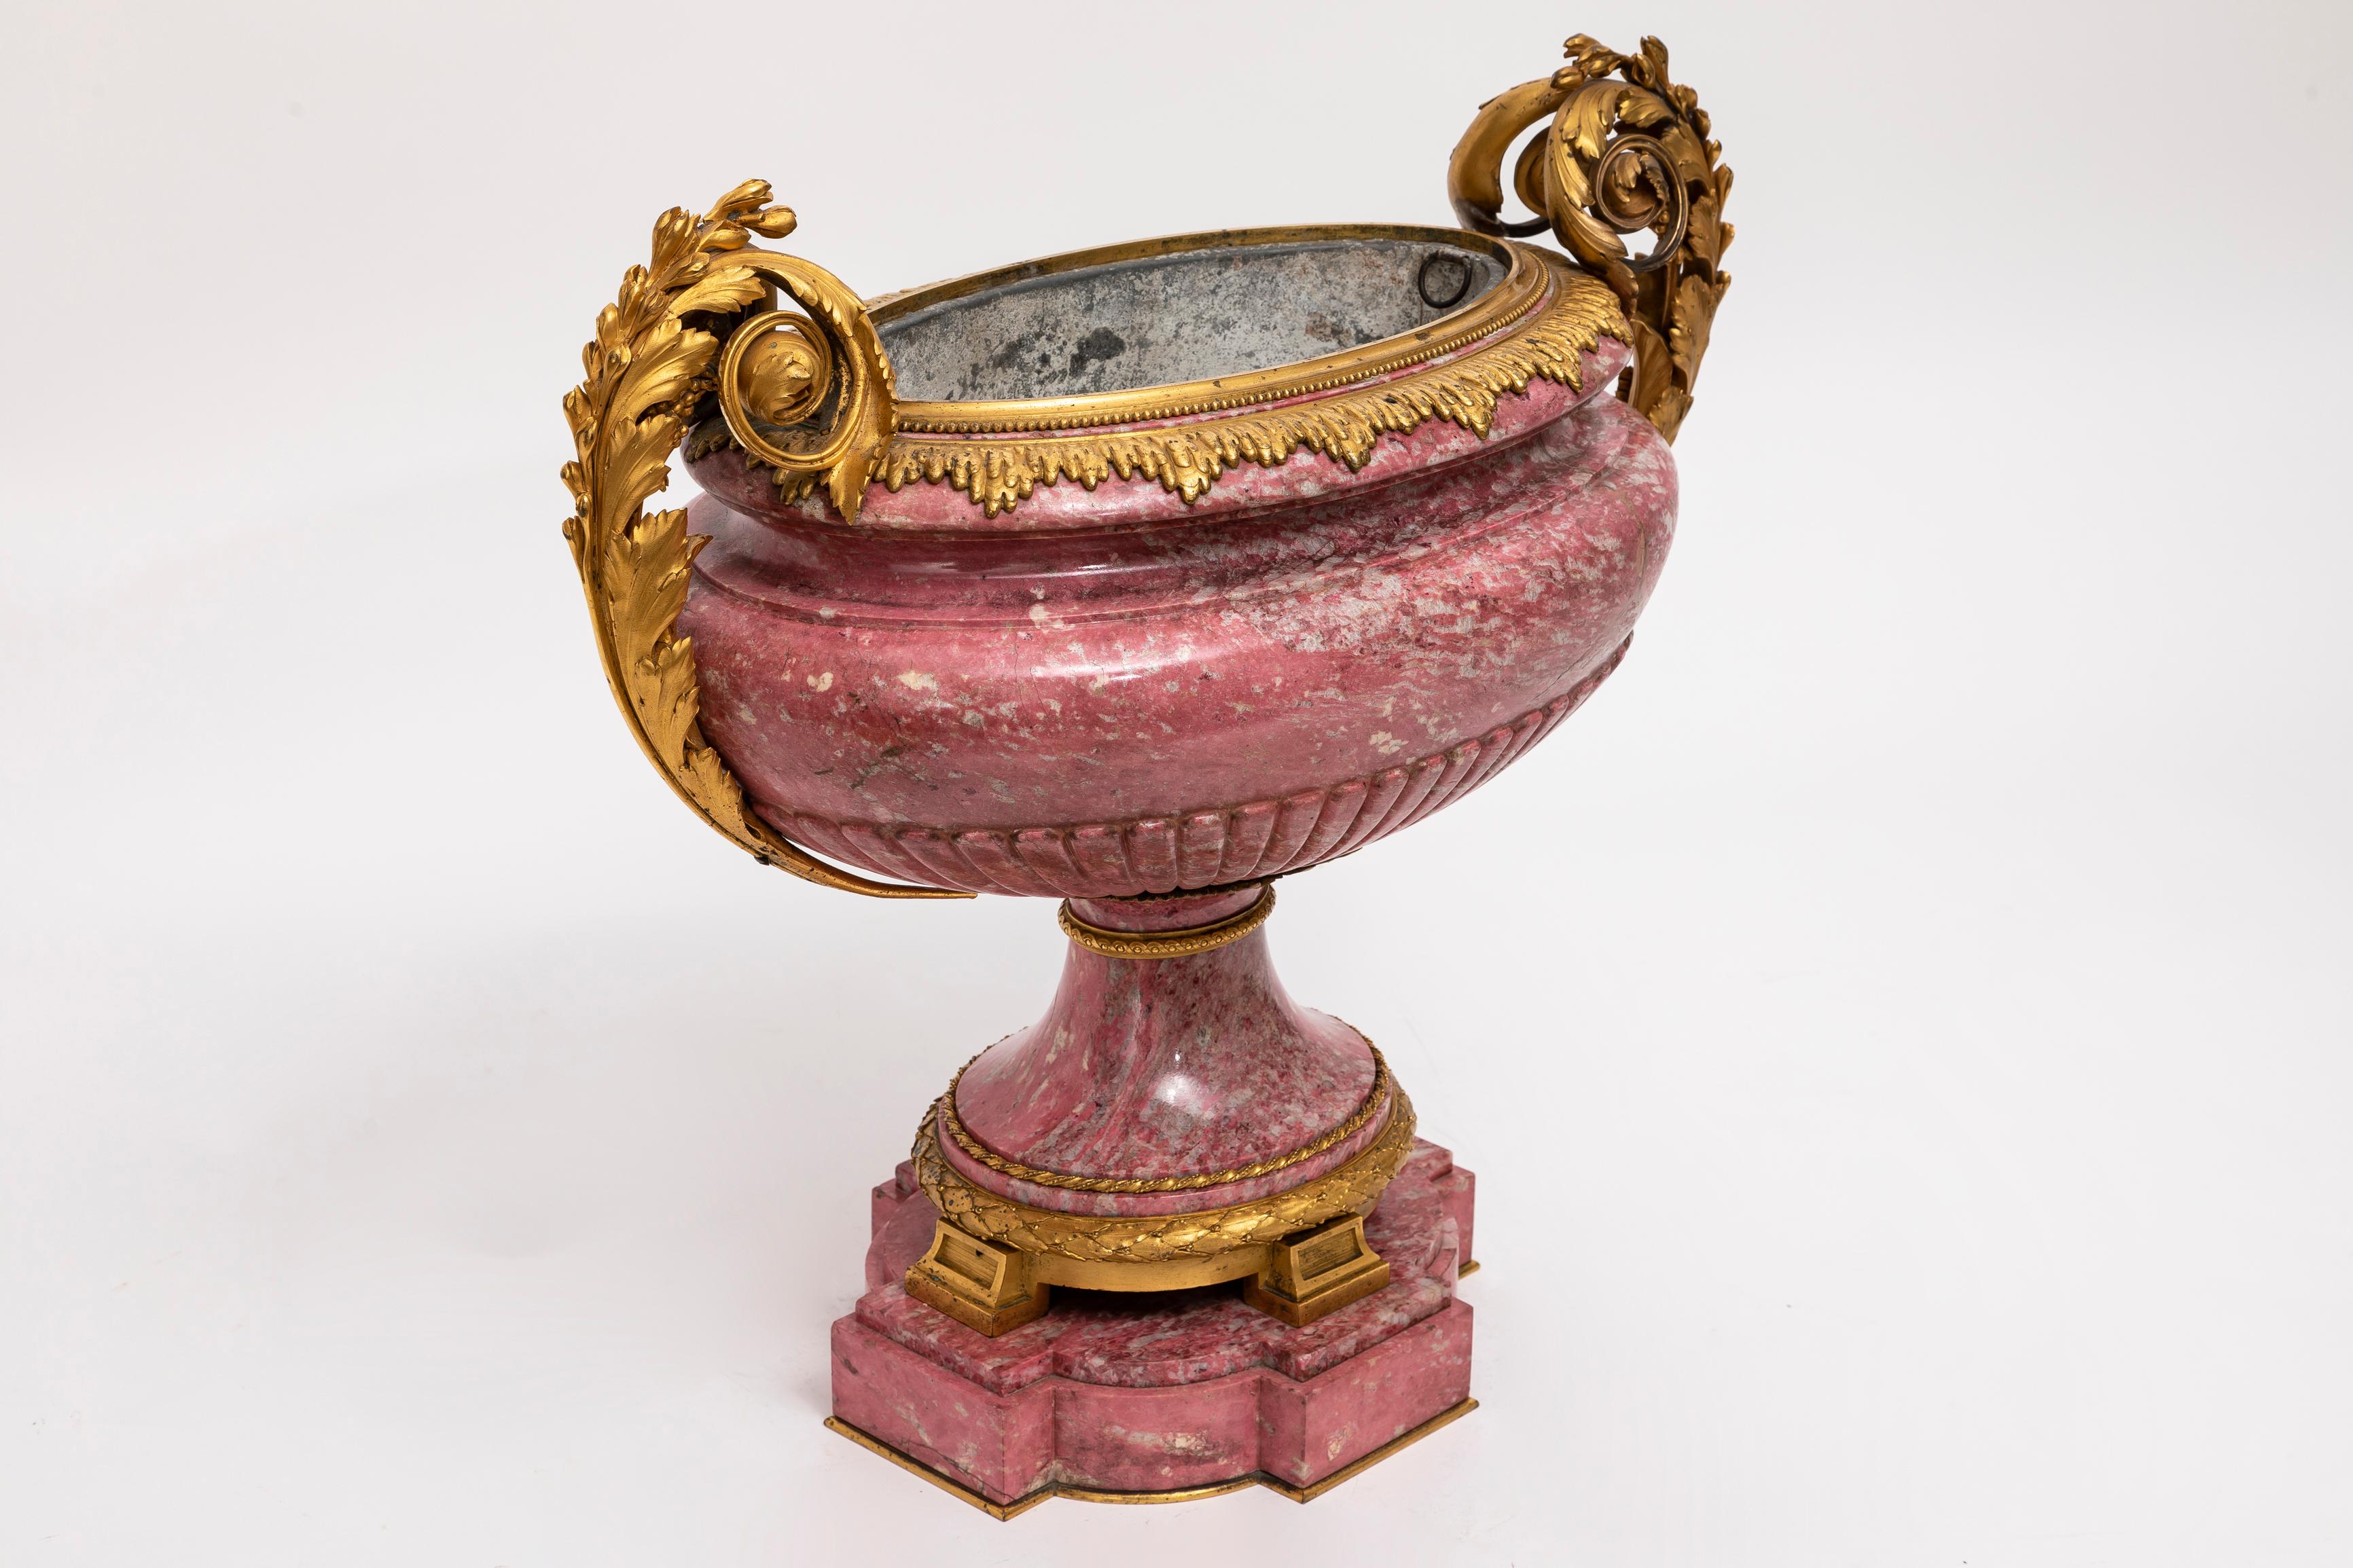  Fabuleux et grand Tazza/Centre de table russe du XIXe siècle en rhodonite rose, monté en bronze doré et sculpté à la main.  Ce tazza est un chef-d'œuvre d'opulence qui incarne le zénith de l'art russe. Cet élégant tazza marie harmonieusement un